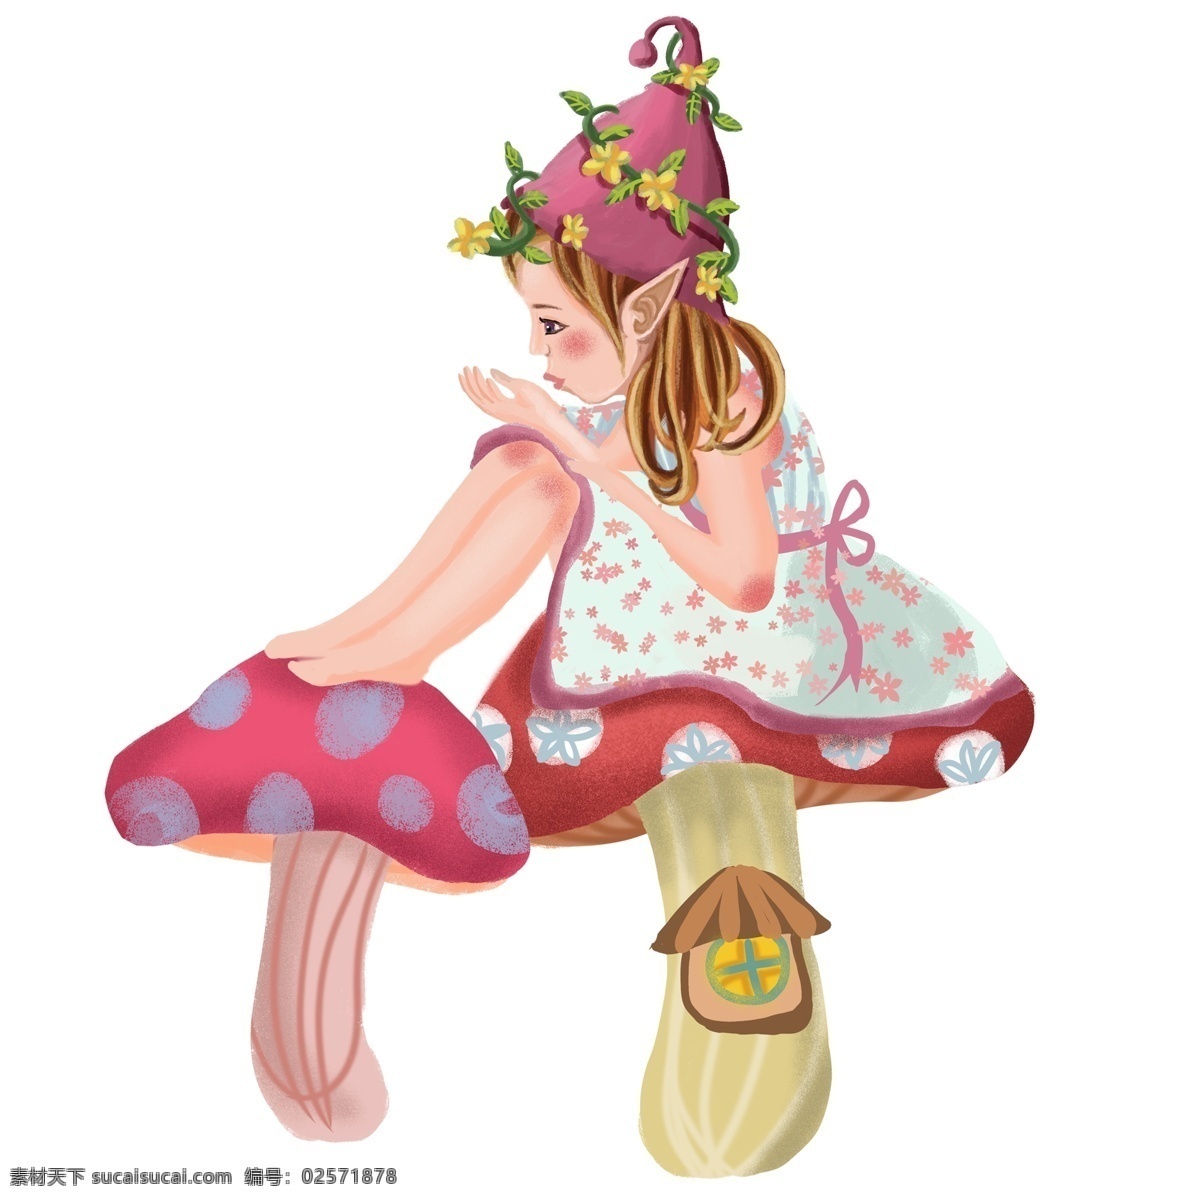 卡通 可爱 风 女孩 插画 人物 元素 时尚 人物元素 免扣素材 透明素材 手绘 蘑菇